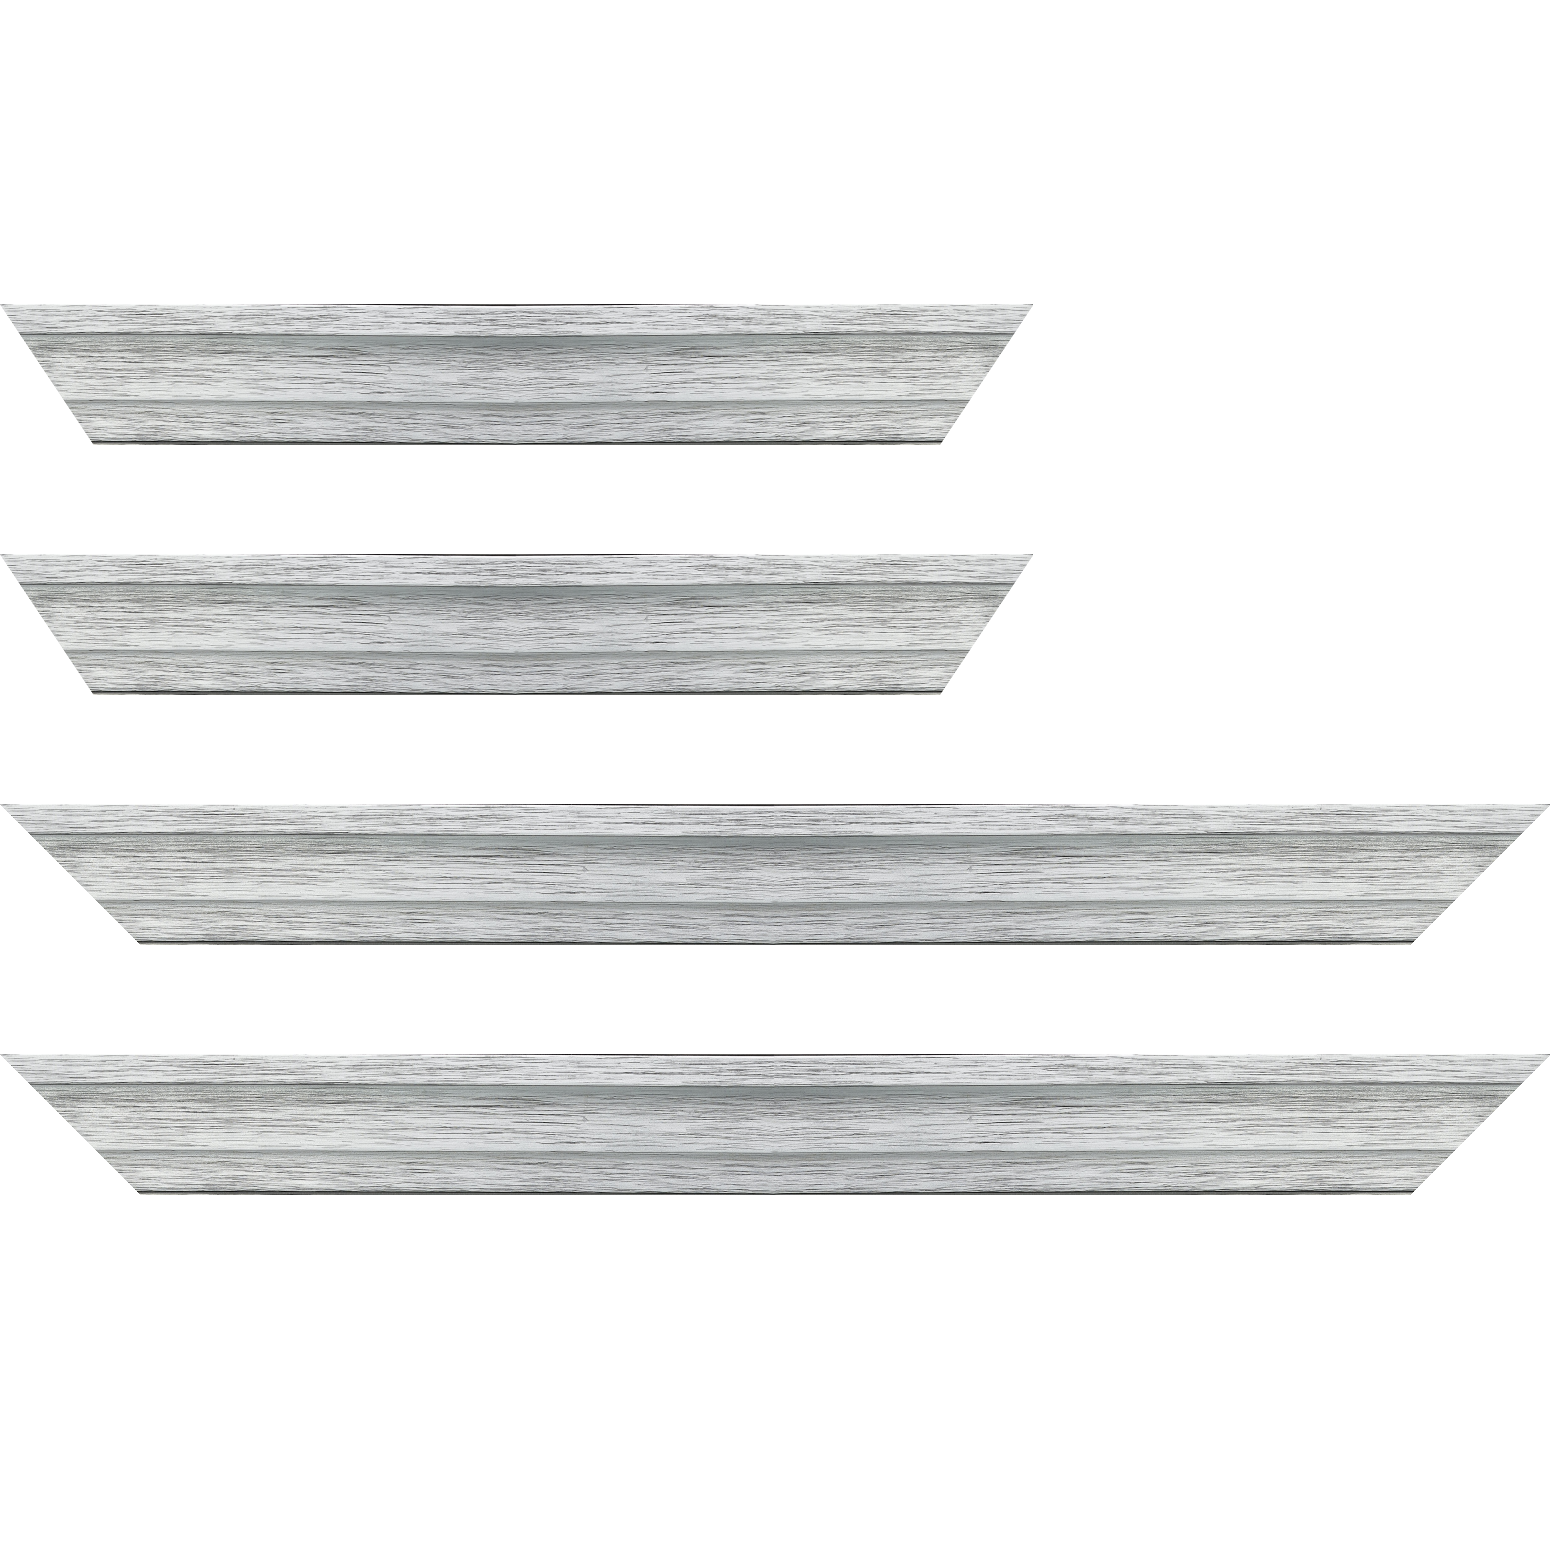 Baguette bois caisse américaine profil escalier largeur 4.4cm couleur argent sur noir (spécialement conçu pour les châssis d'une épaisseur jusqu’à 2.5cm )